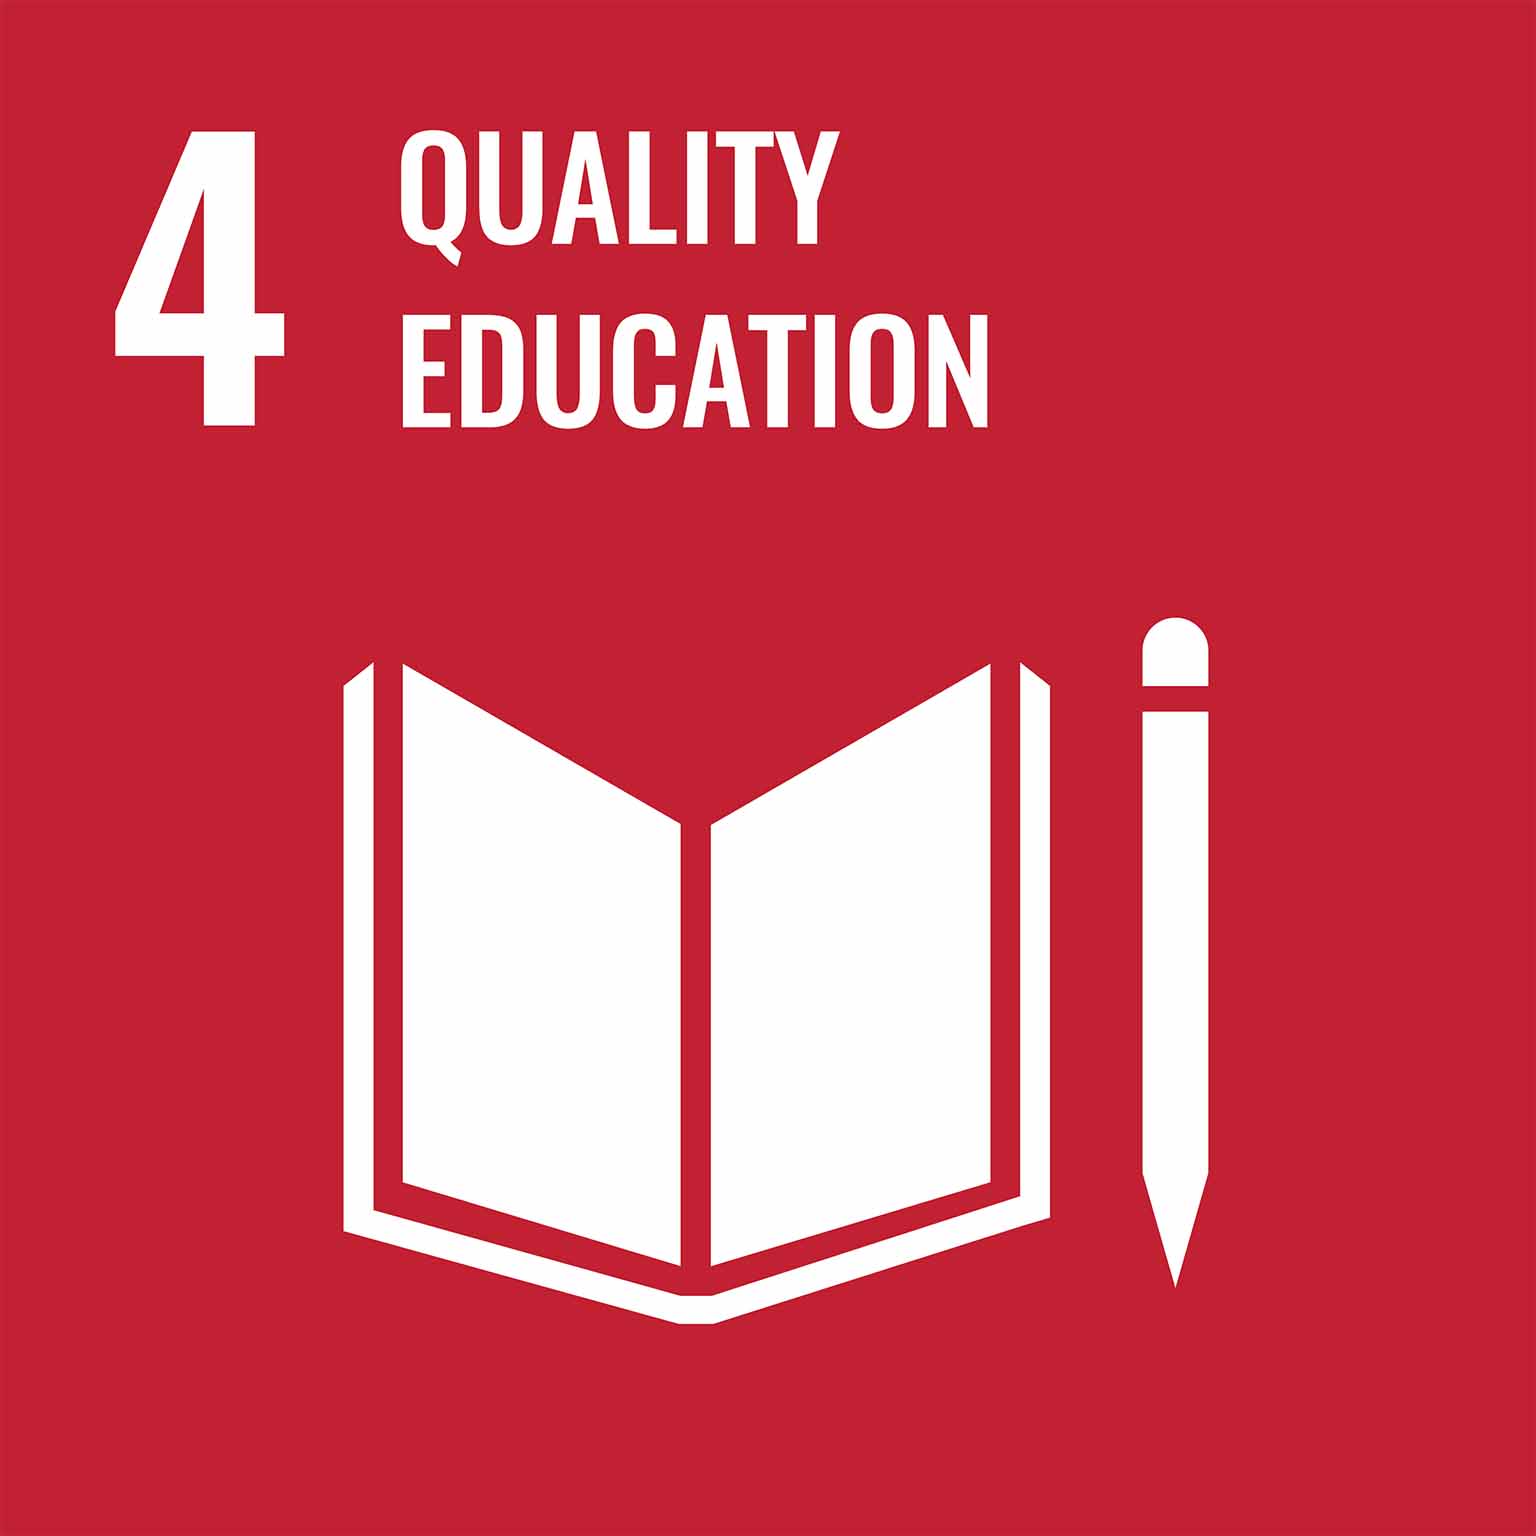 UN Goal: Quality Education